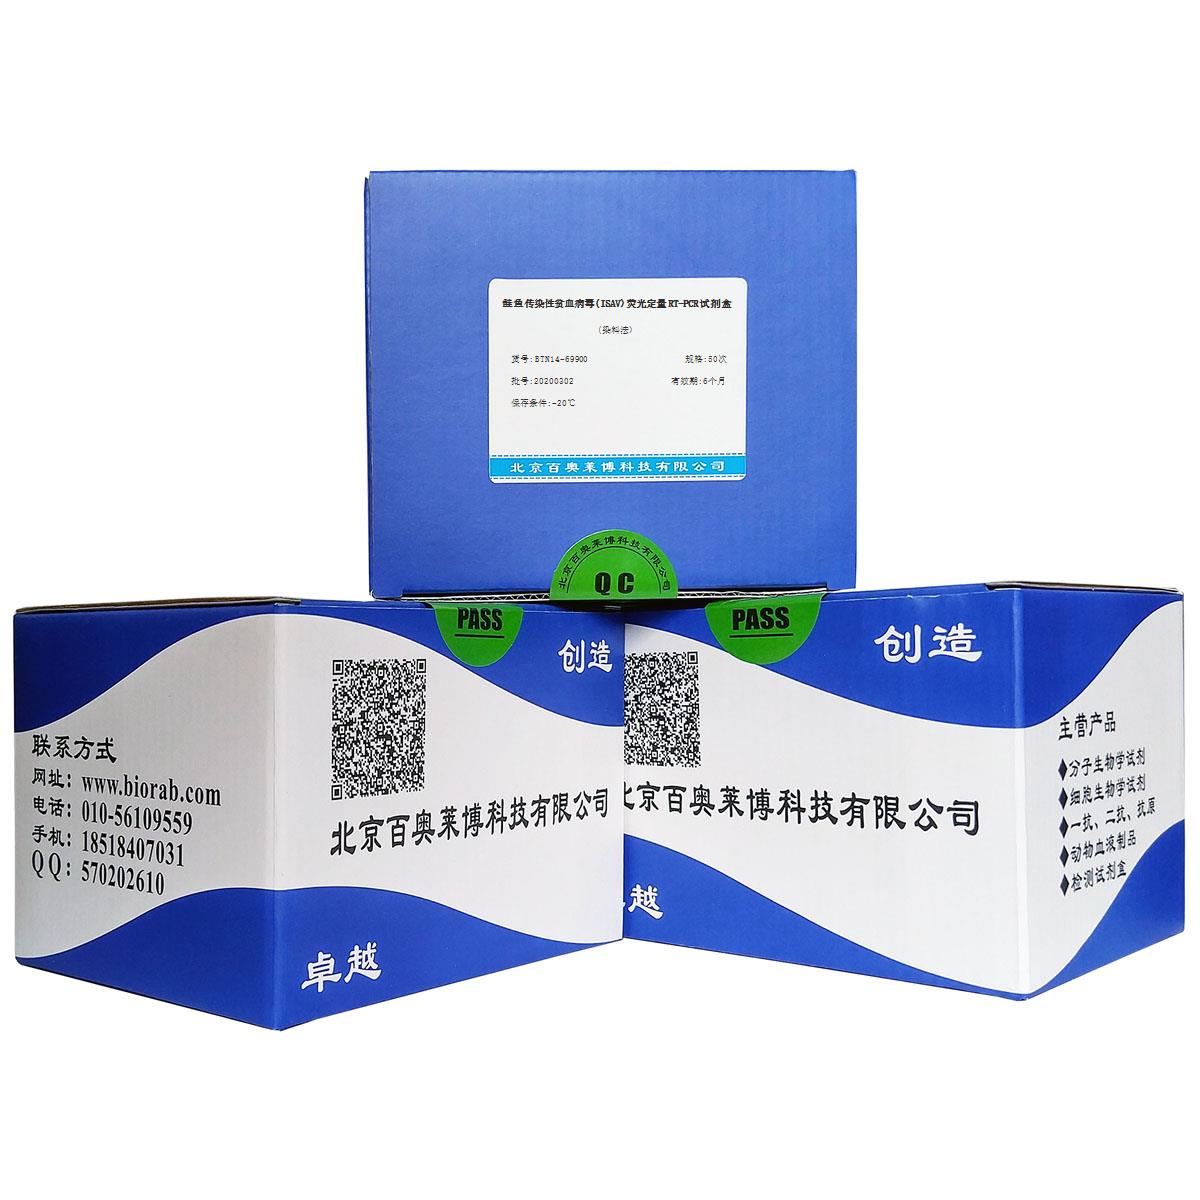 鲑鱼传染性贫血病毒(ISAV)荧光定量RT-PCR试剂盒(染料法)